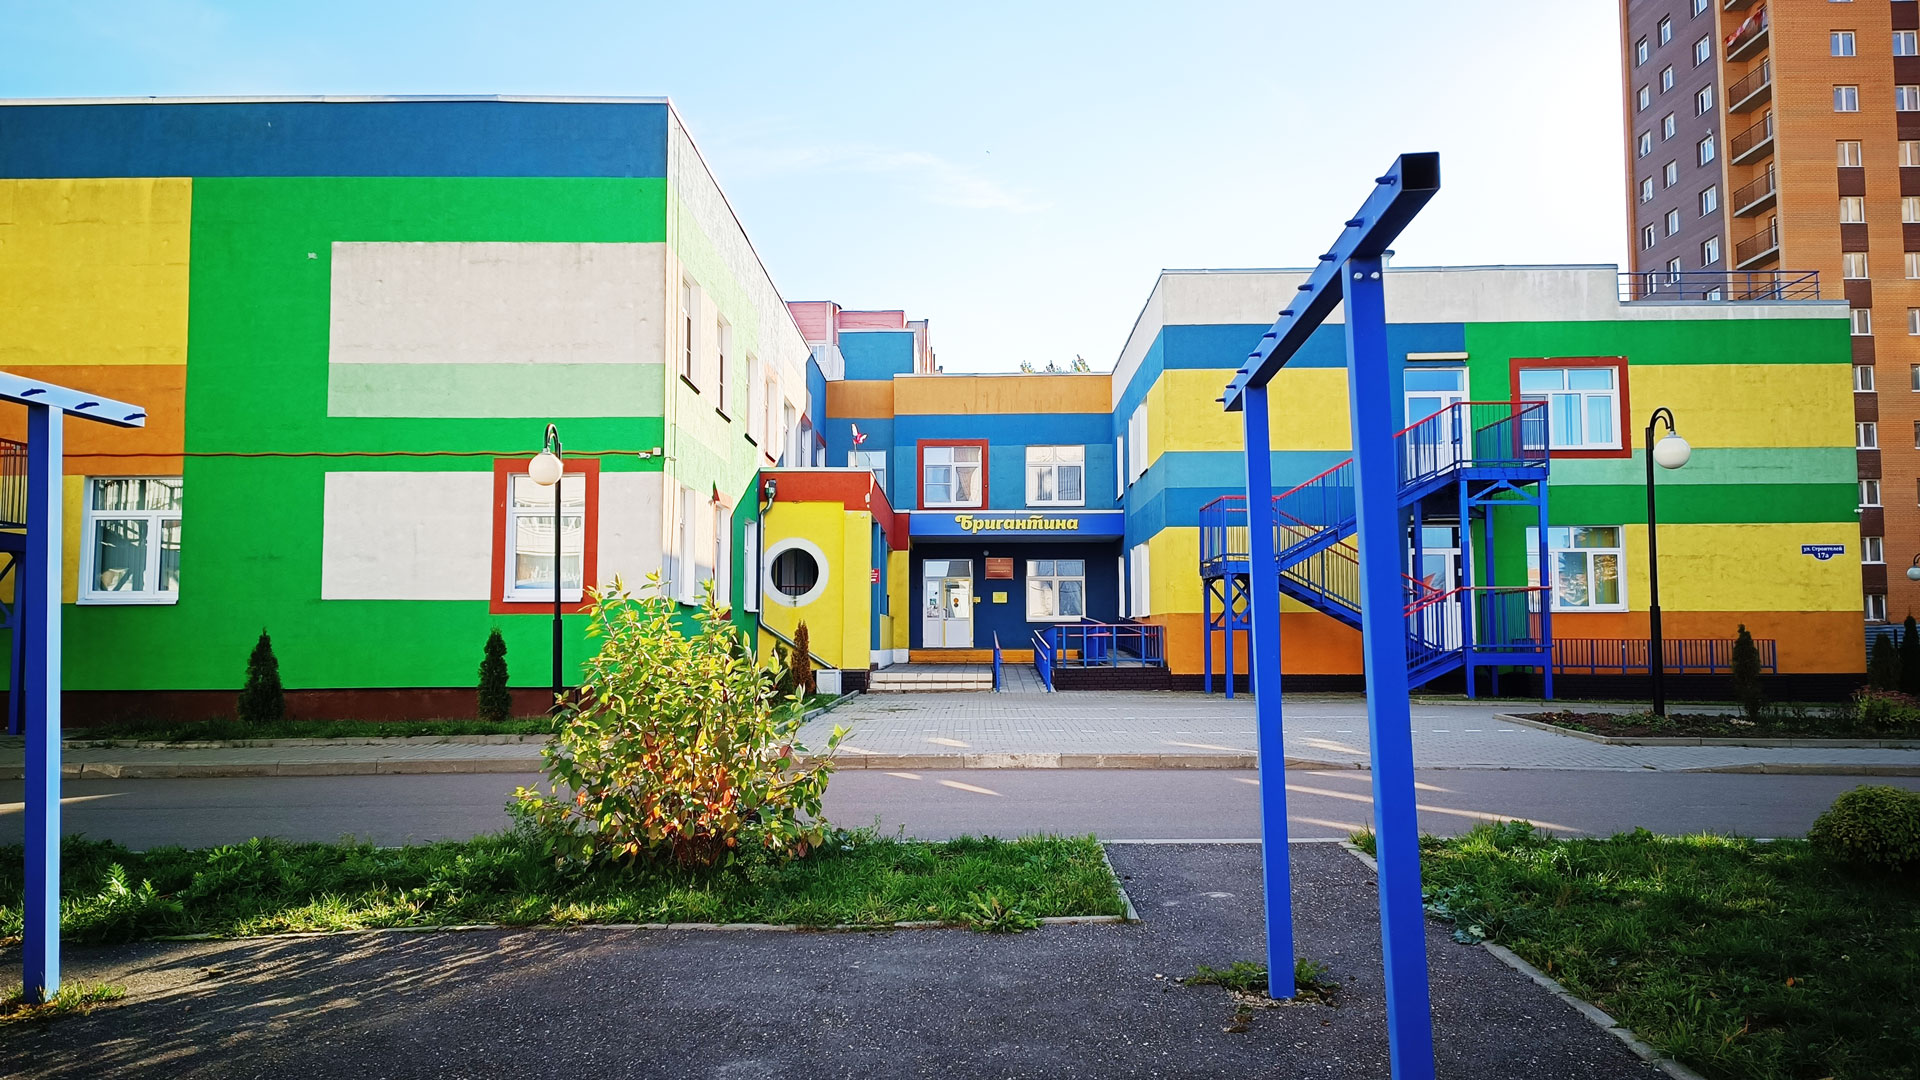 Детский сад 2 Ярославль: общий вид здания.